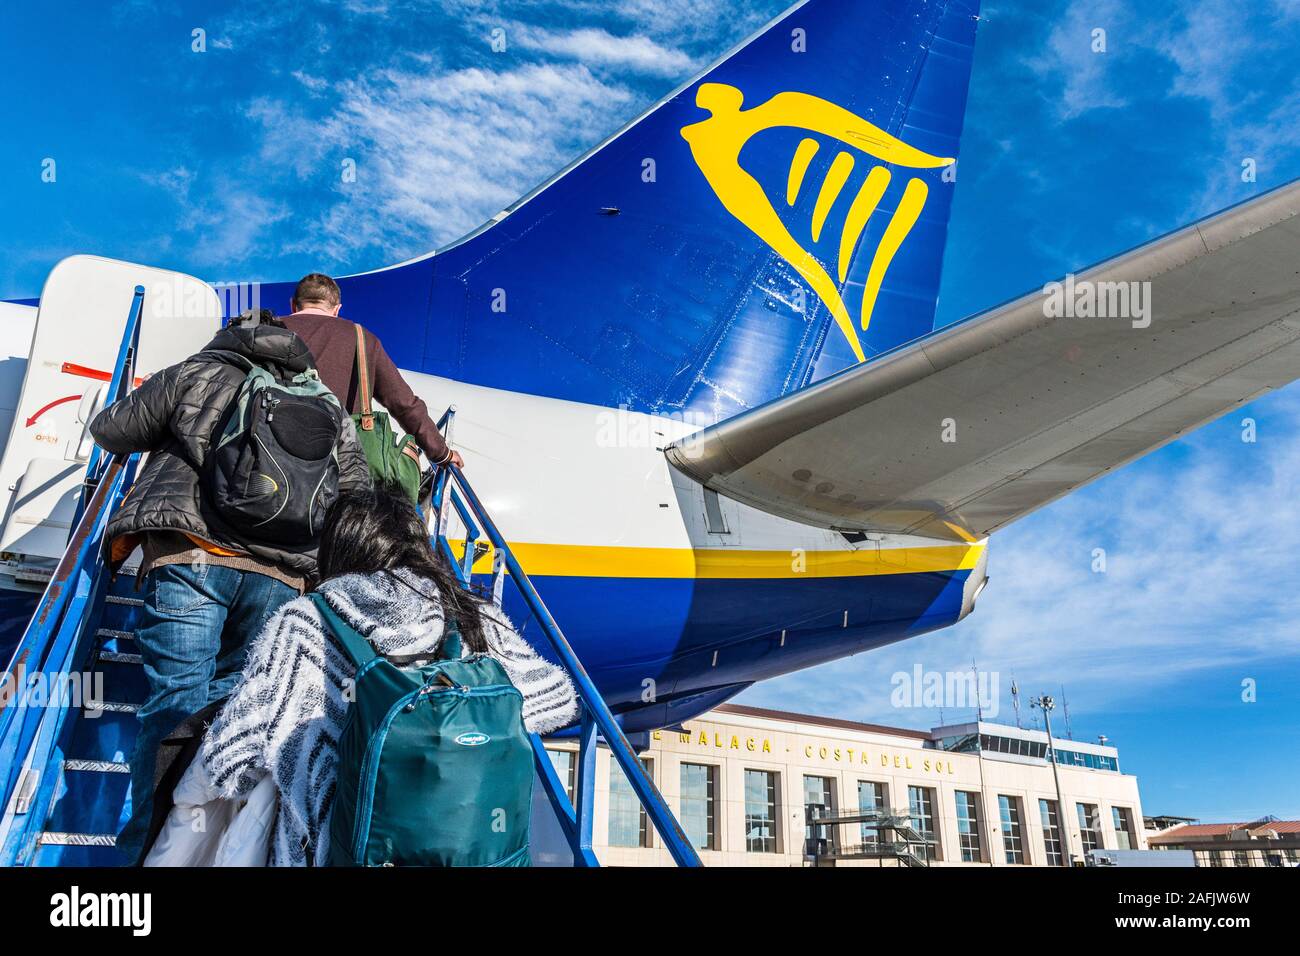 Die Passagiere an Bord eines Ryanair am Flughafen Malaga, Spanien Stockfoto